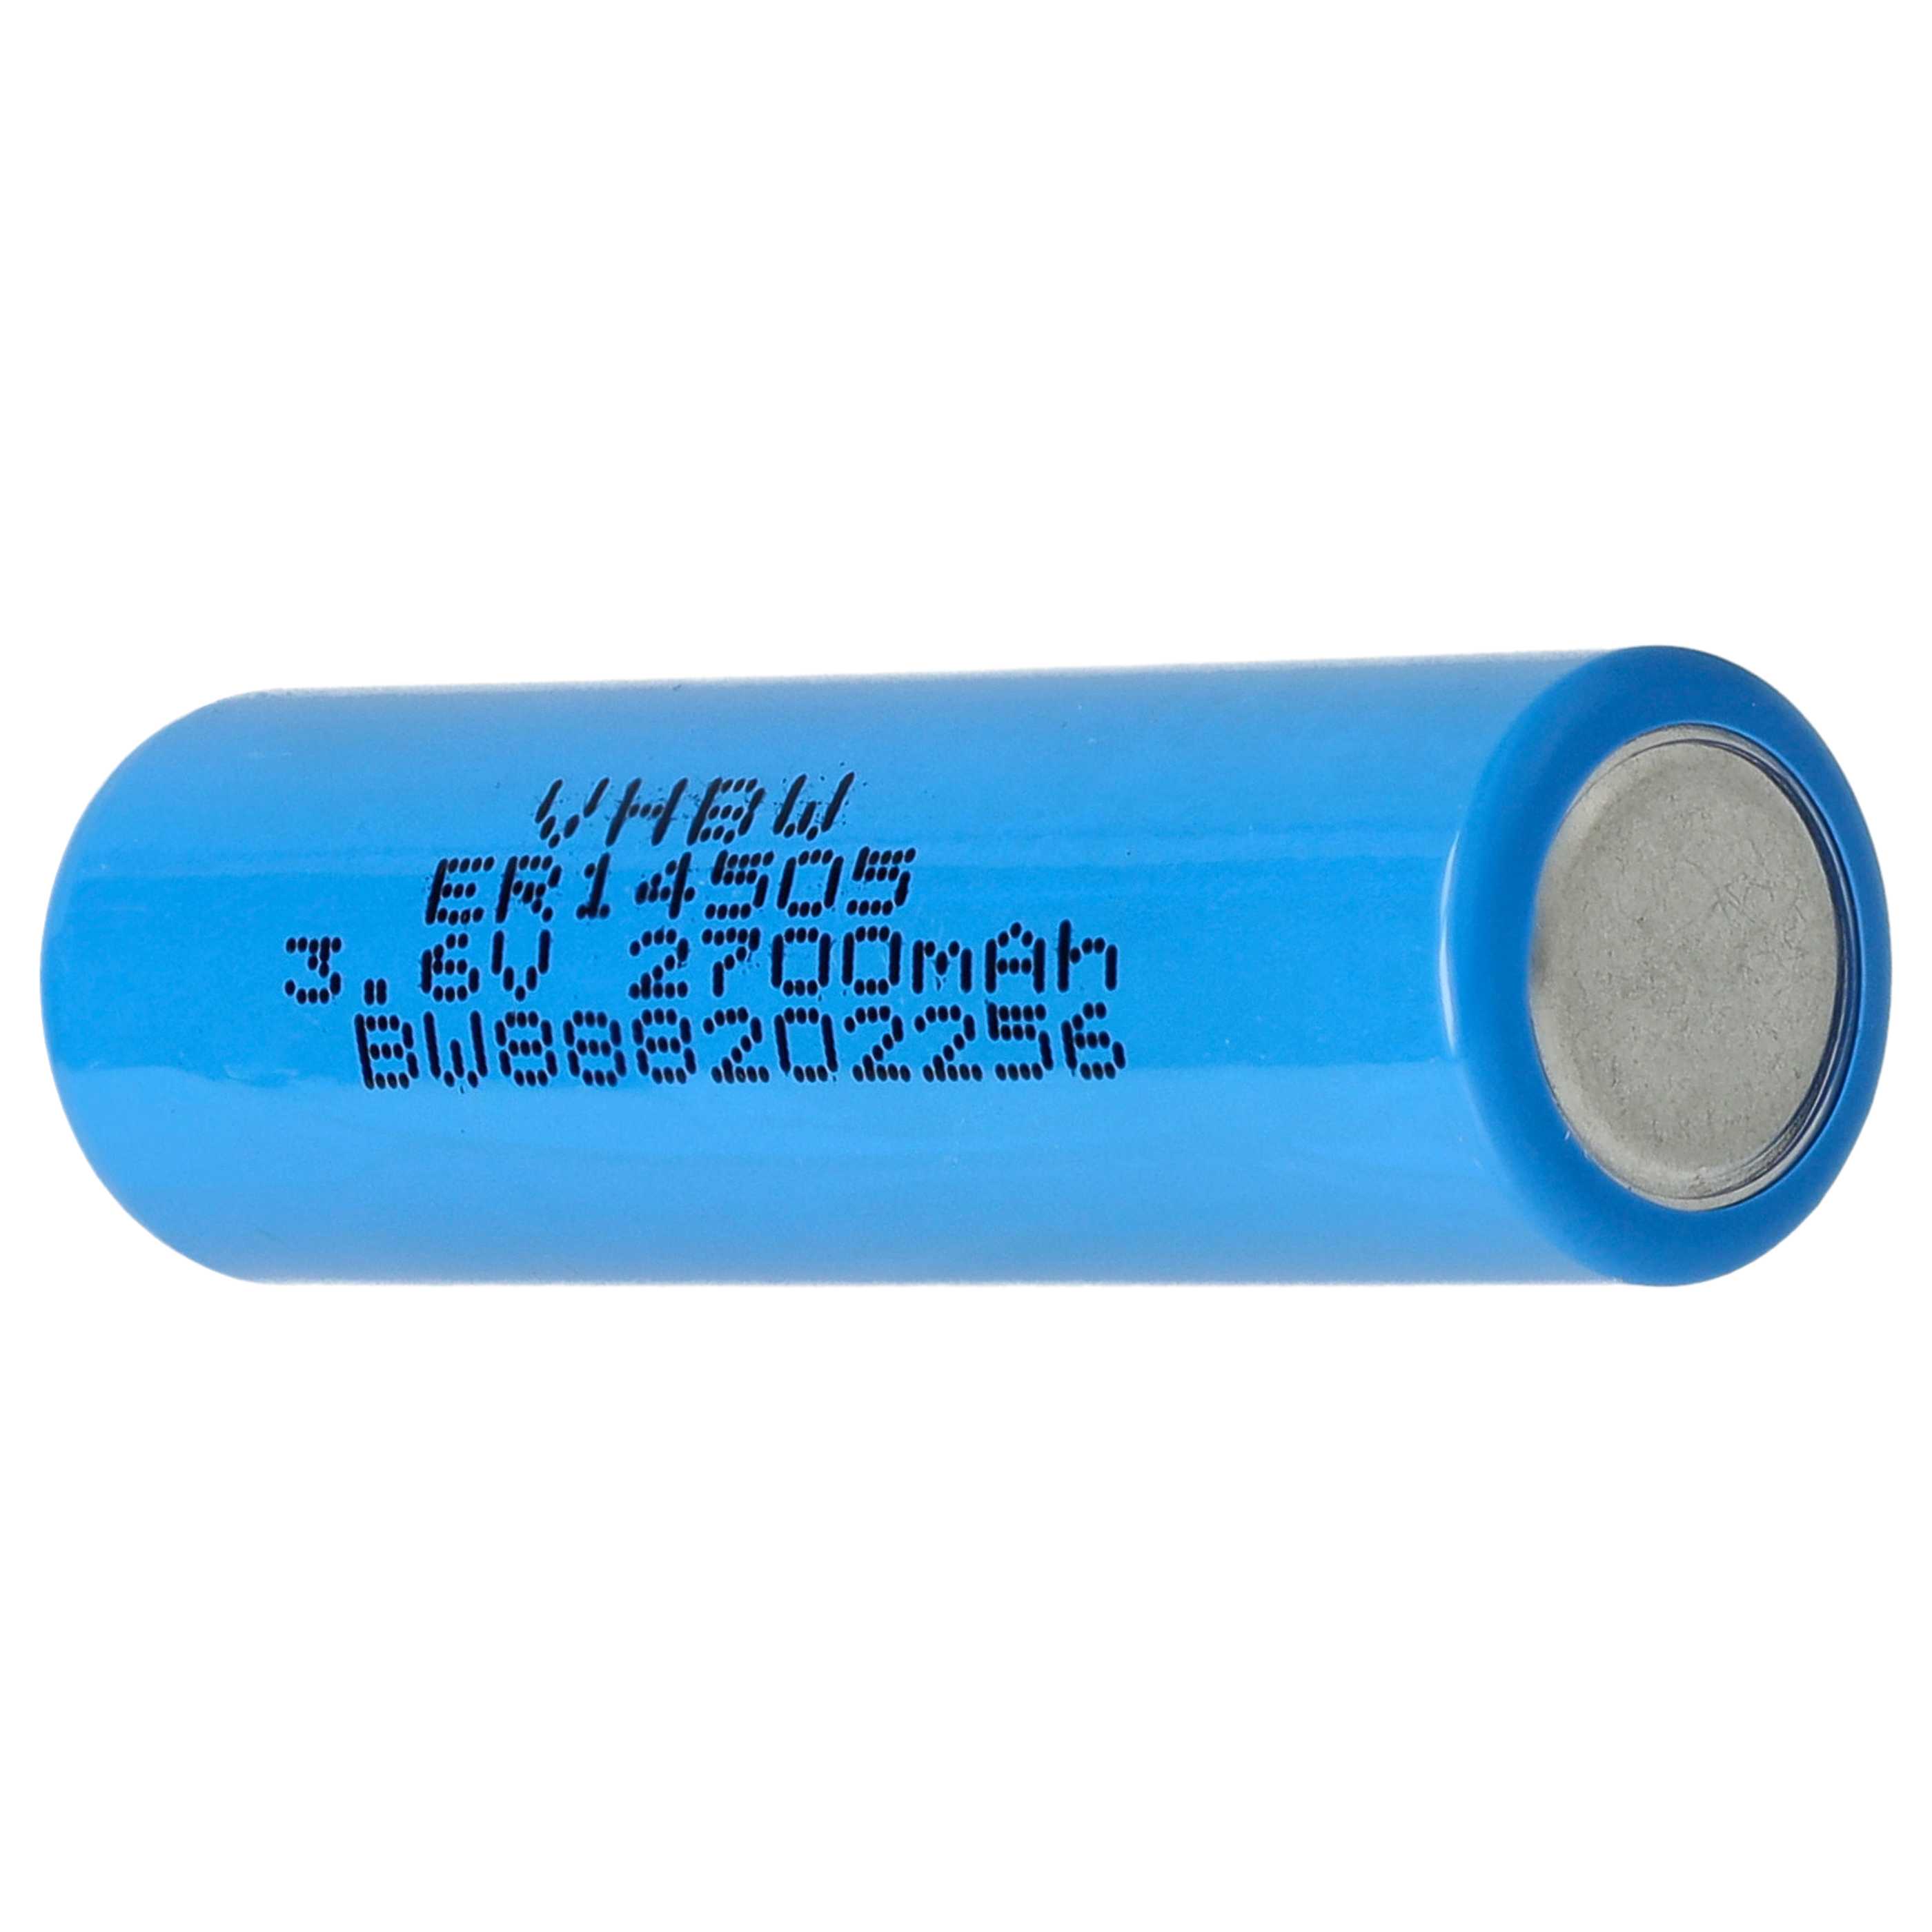 ER14250 Spezial-Batterie passend für Viessmann Trimatik, Trimatik 2 - 2700mAh 3,6V Li-SOCl2